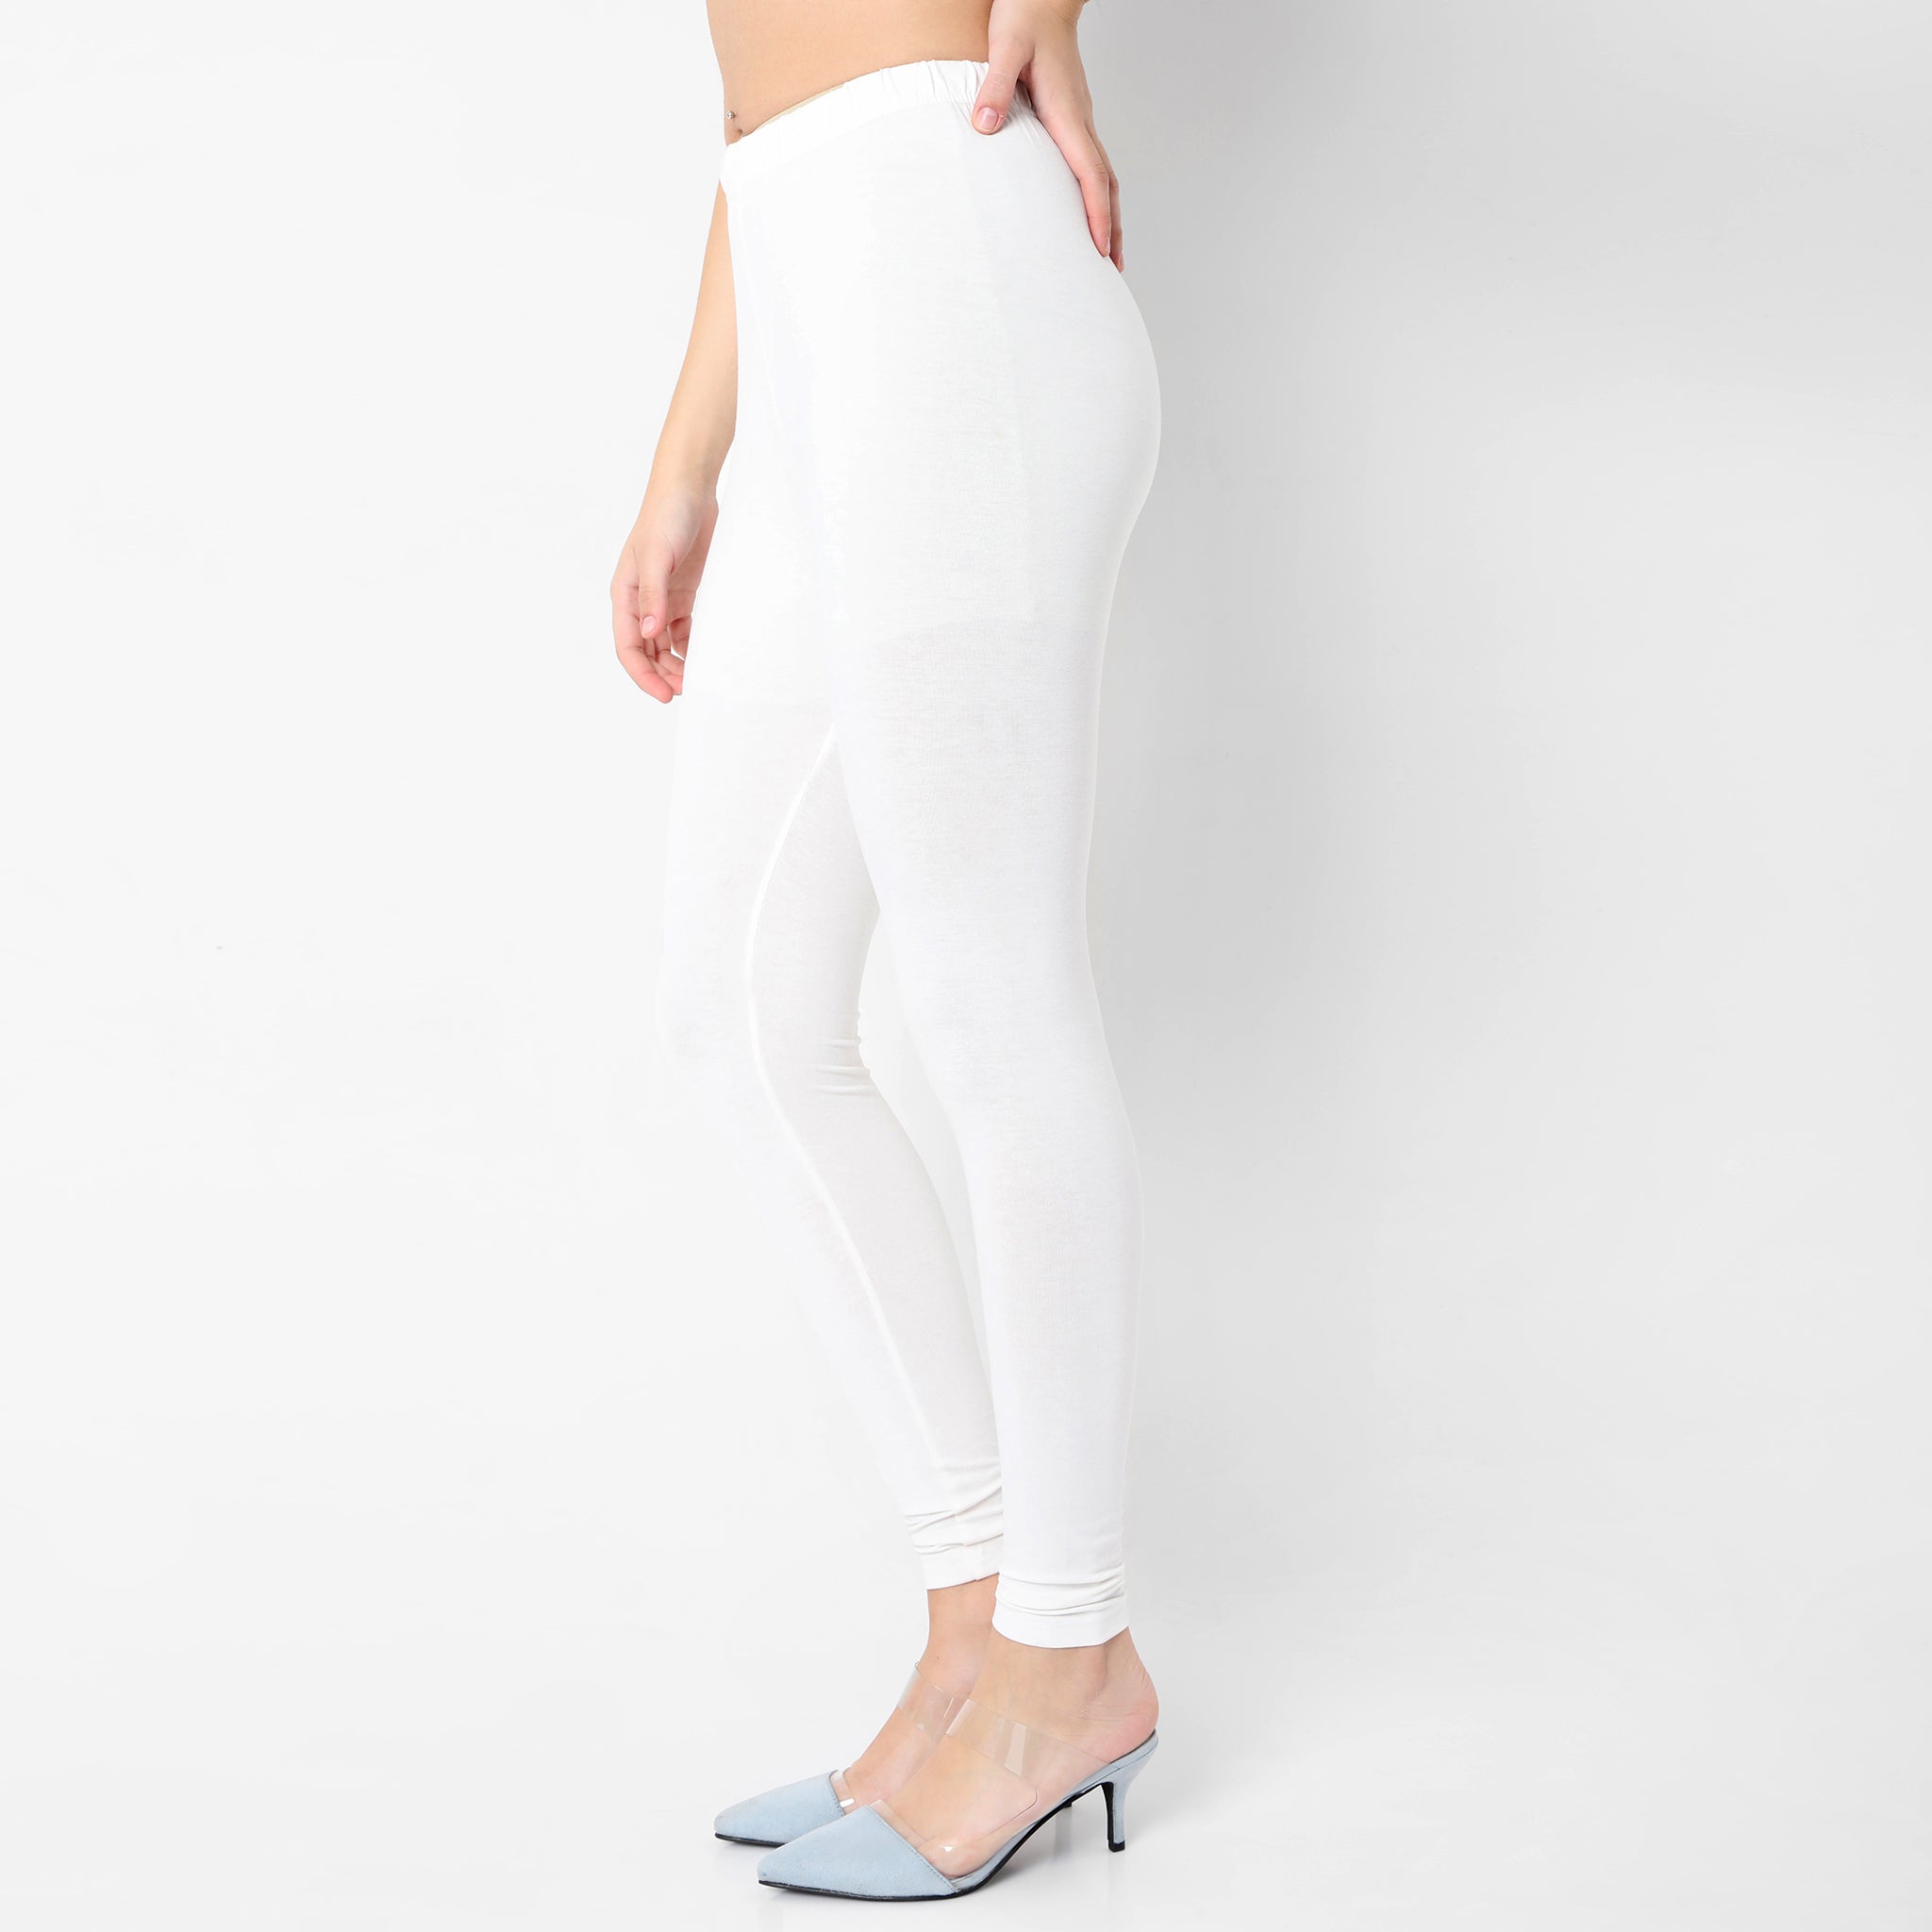 Leggings Off-White - Black logoed leggings - OWCD009F189290531000